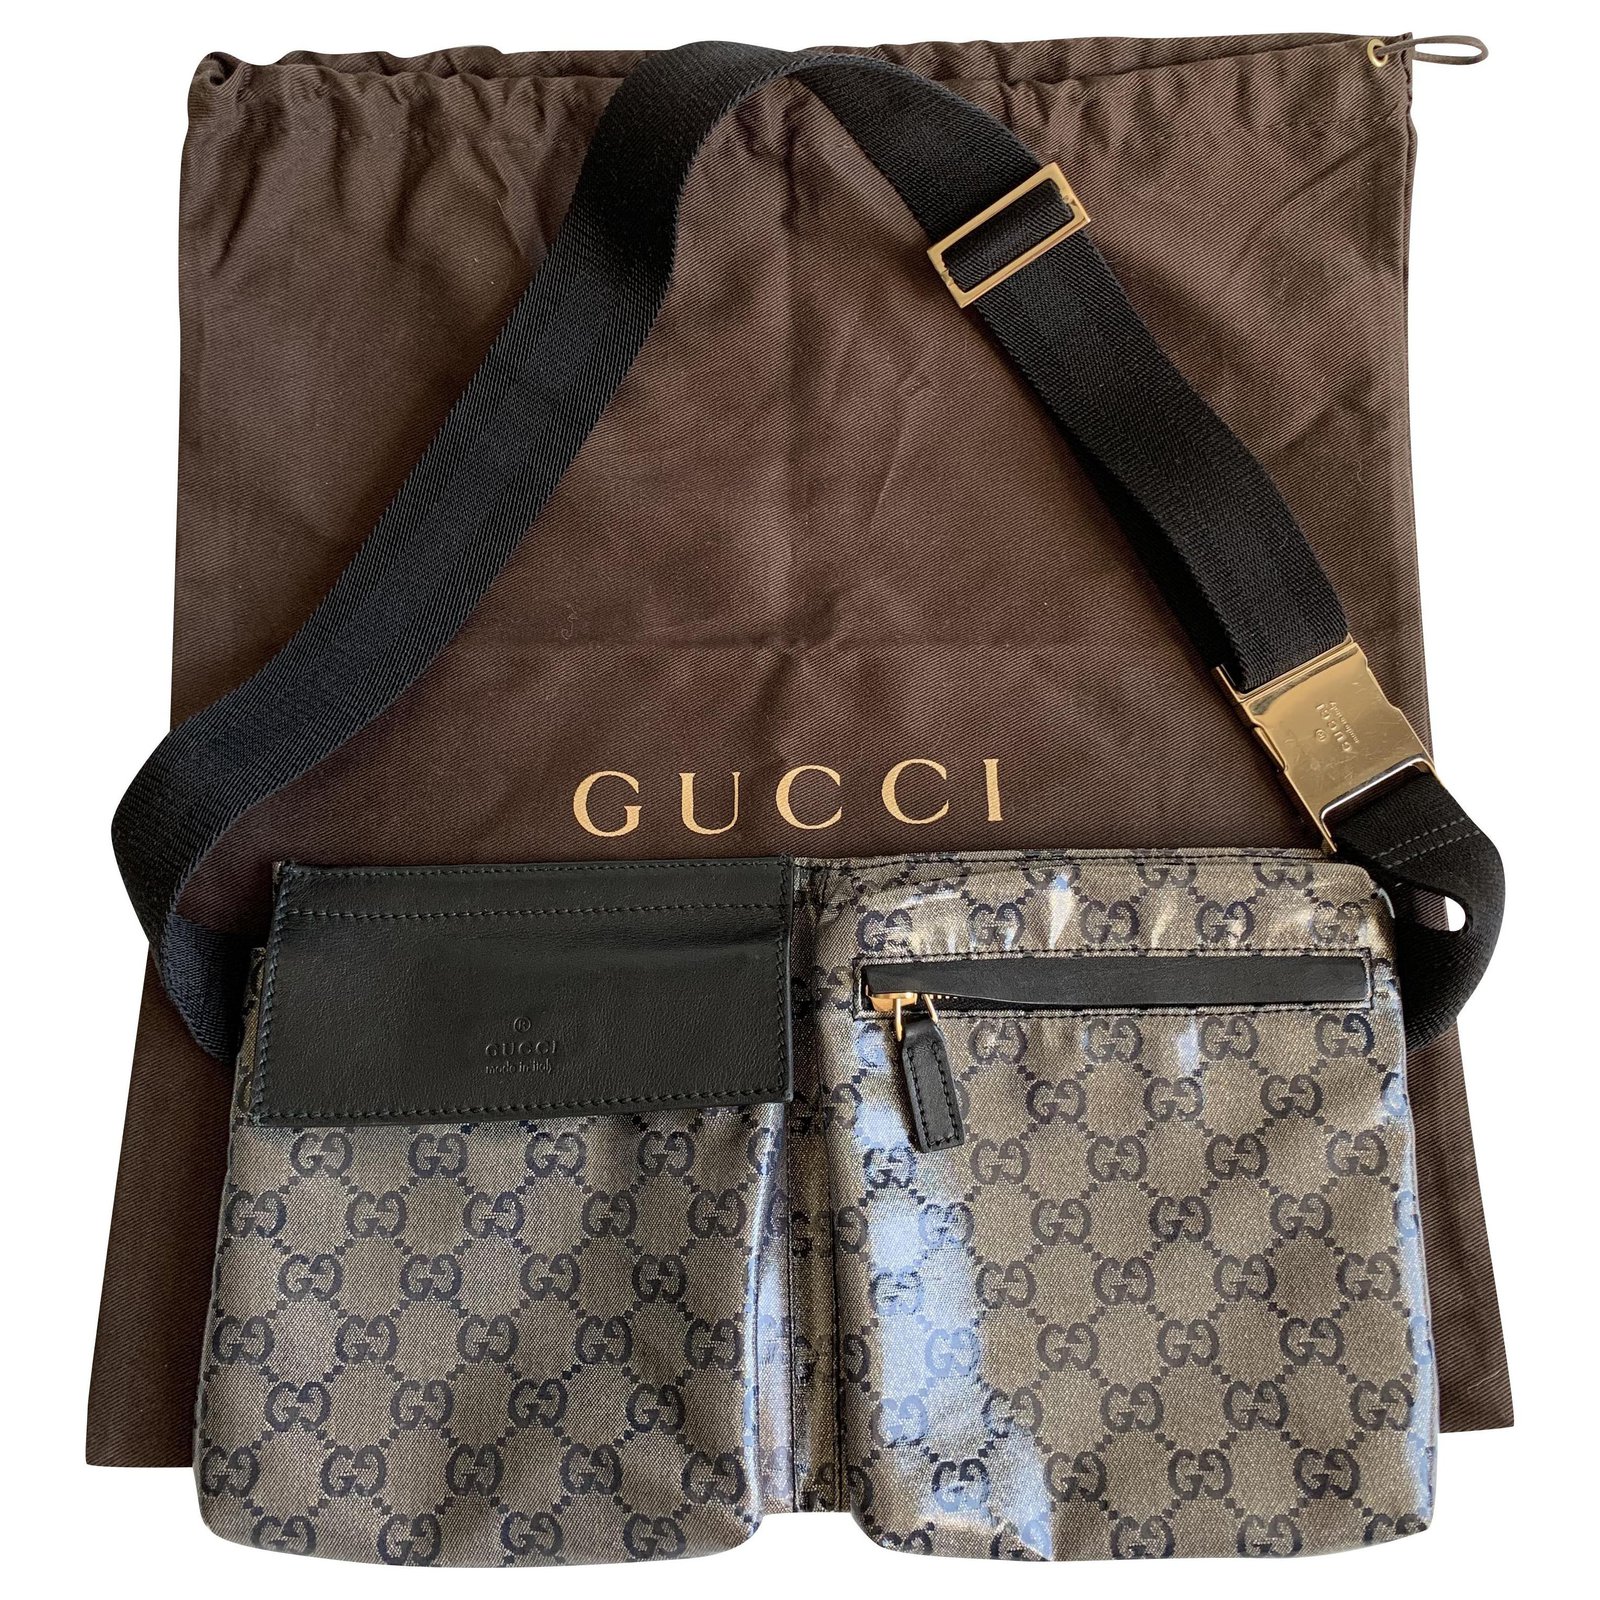 gucci sling bag vintage